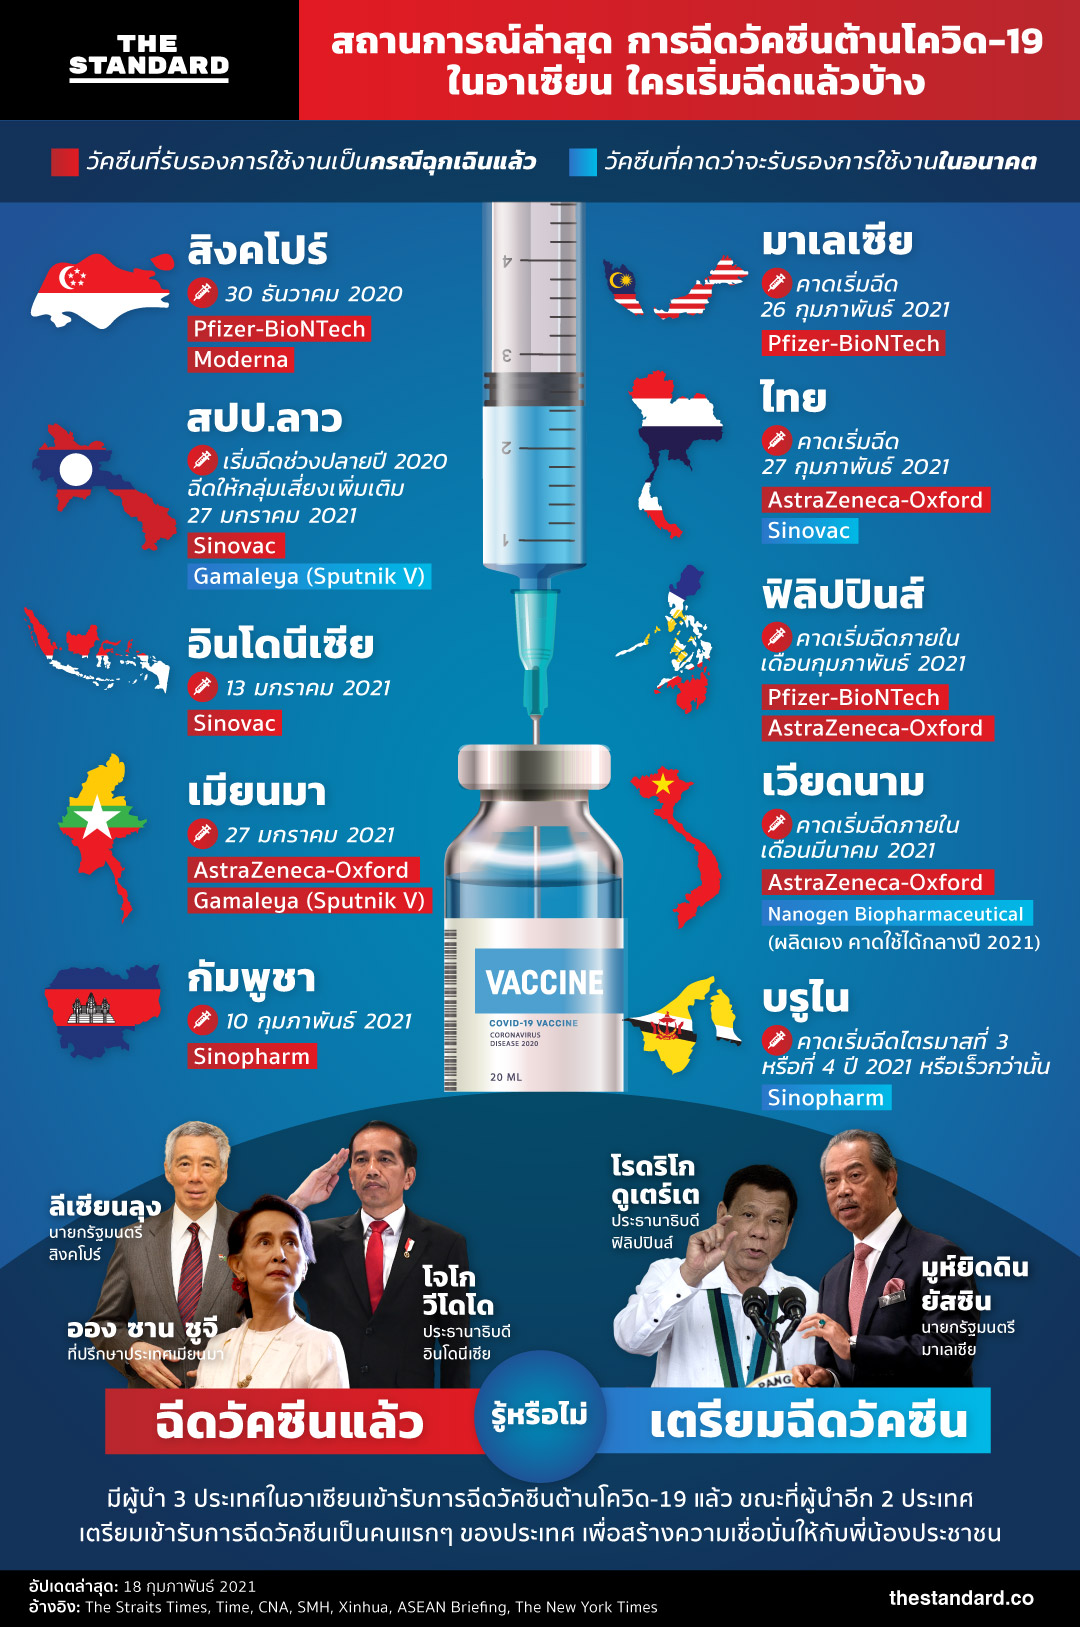 สถานการณ์ล่าสุด การฉีดวัคซีนต้านโควิด-19 ในอาเซียน ใครเริ่มฉีดแล้วบ้าง infographic